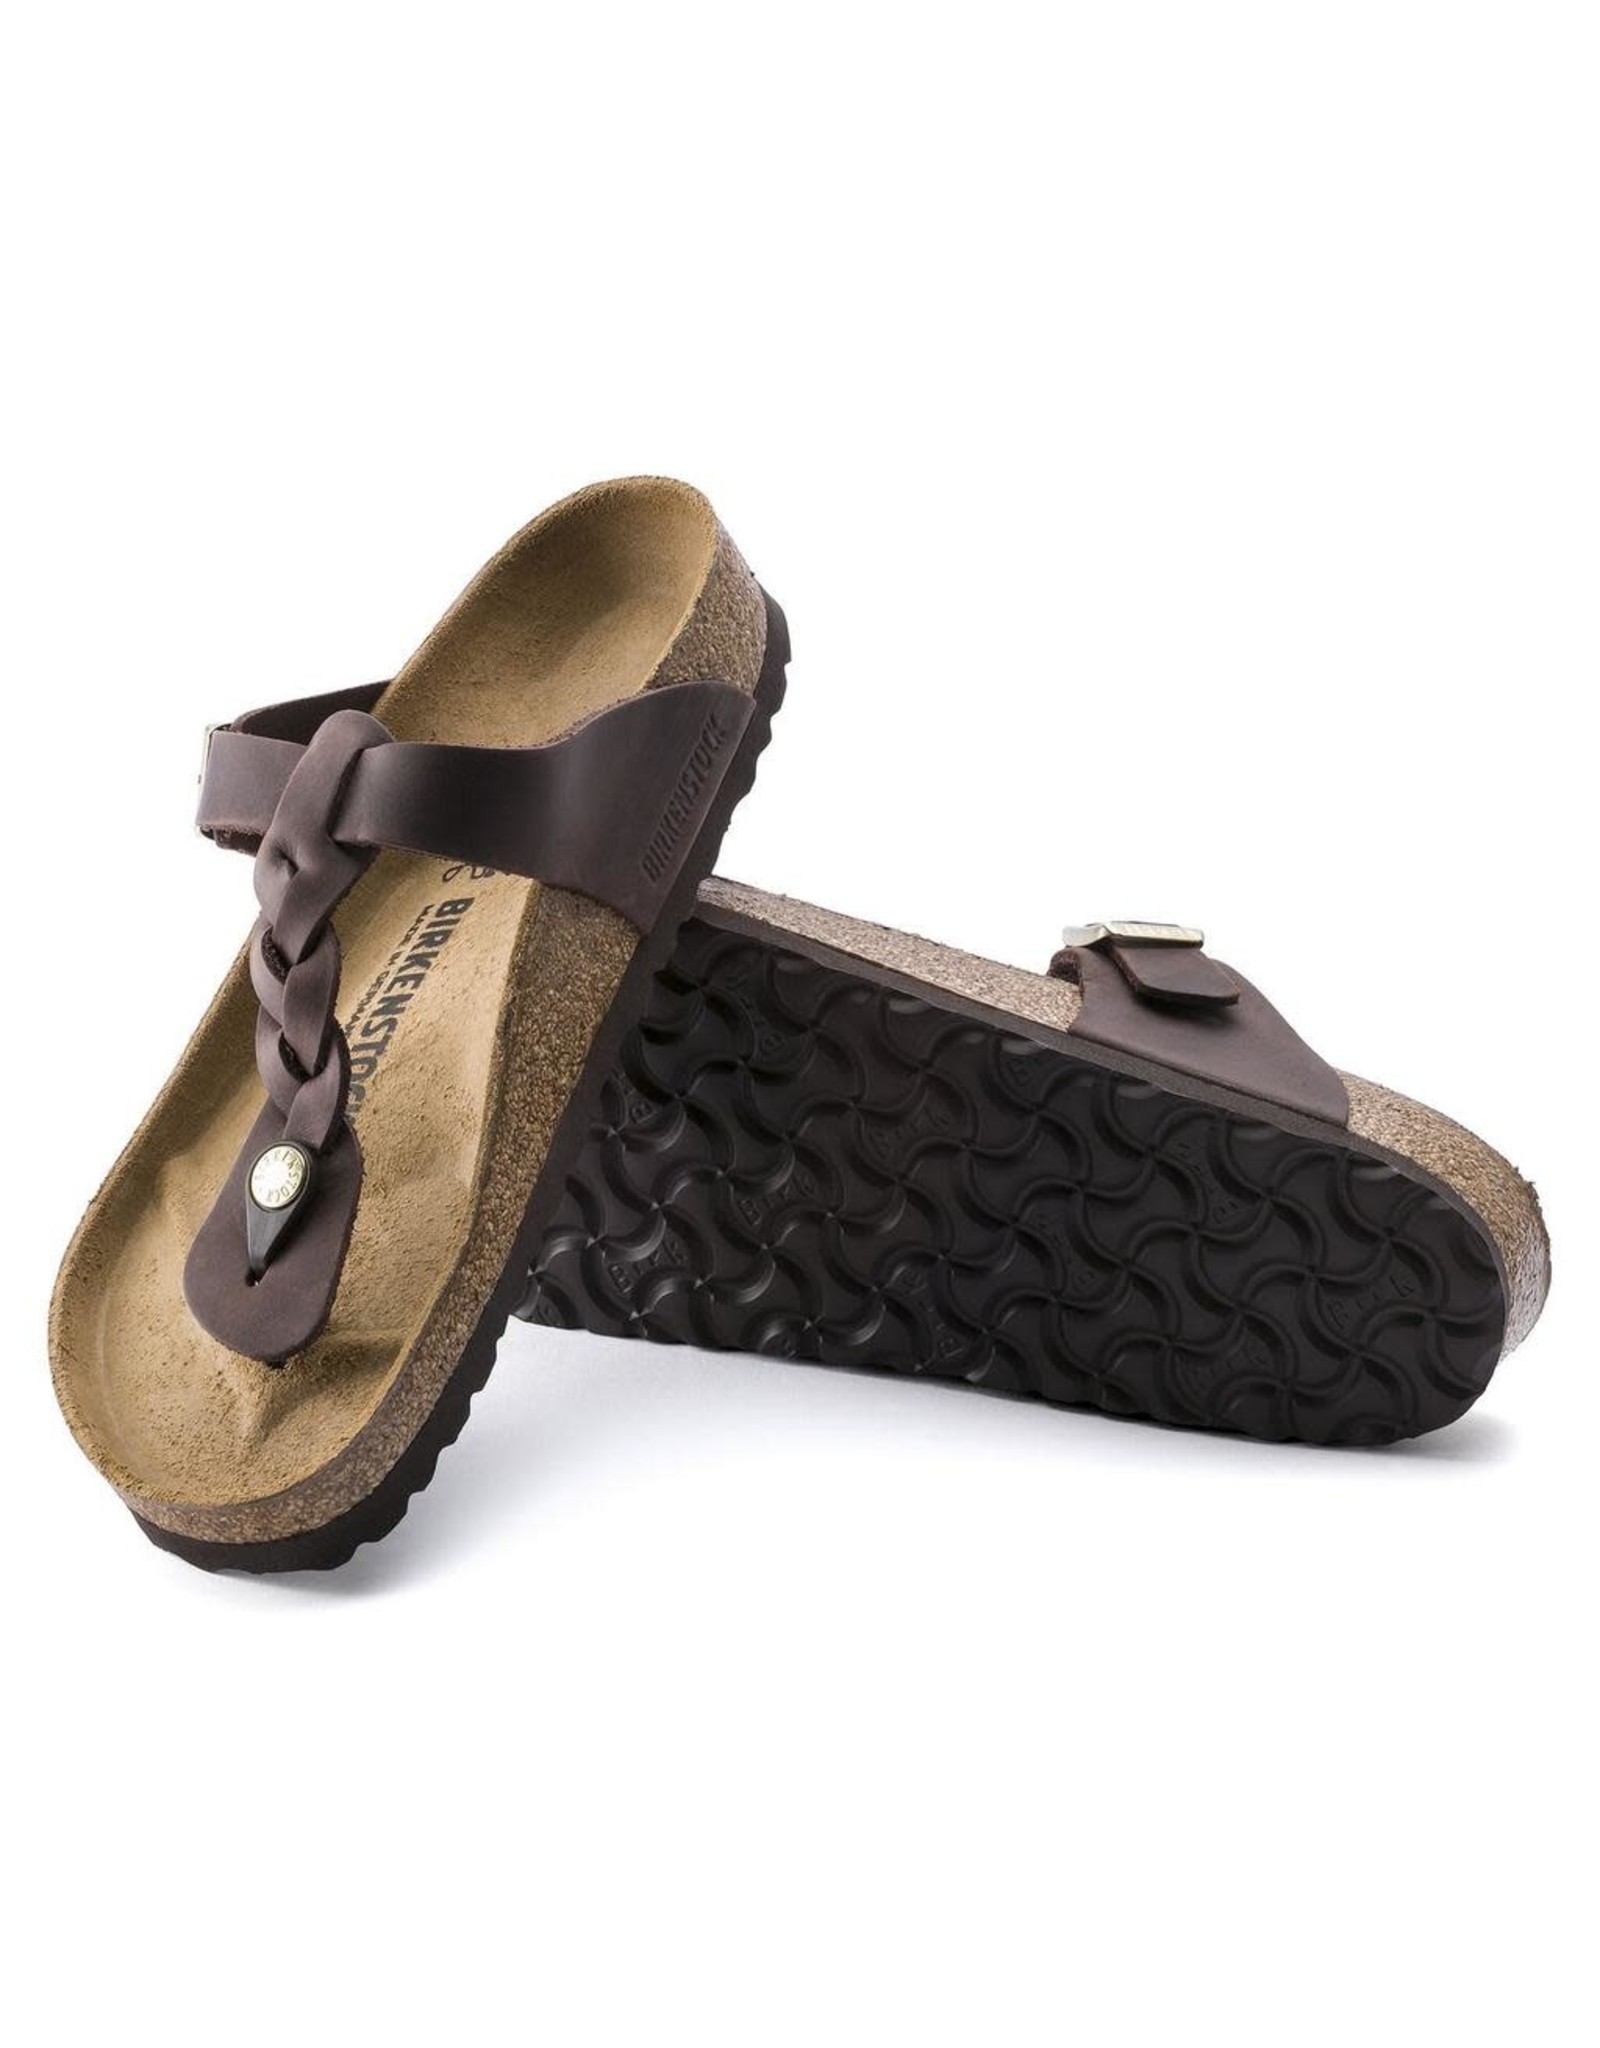 braided birkenstock sandals